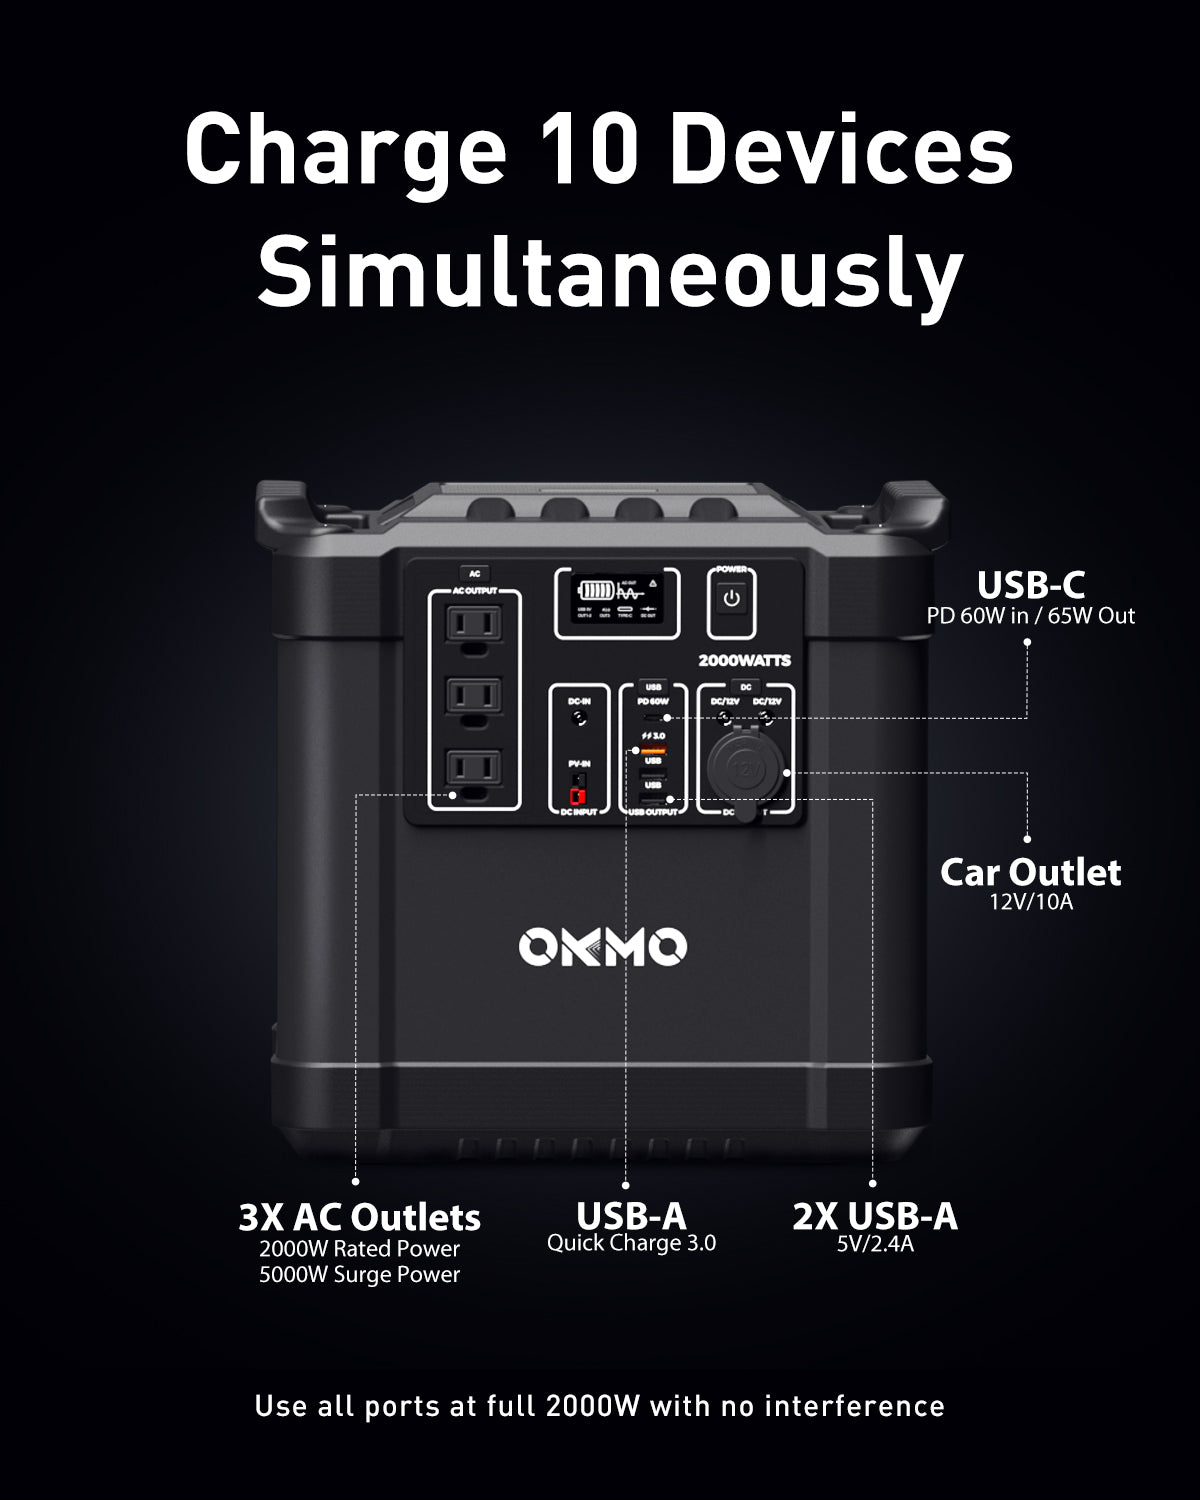 OKMO 2000W Portable Power Station G2000